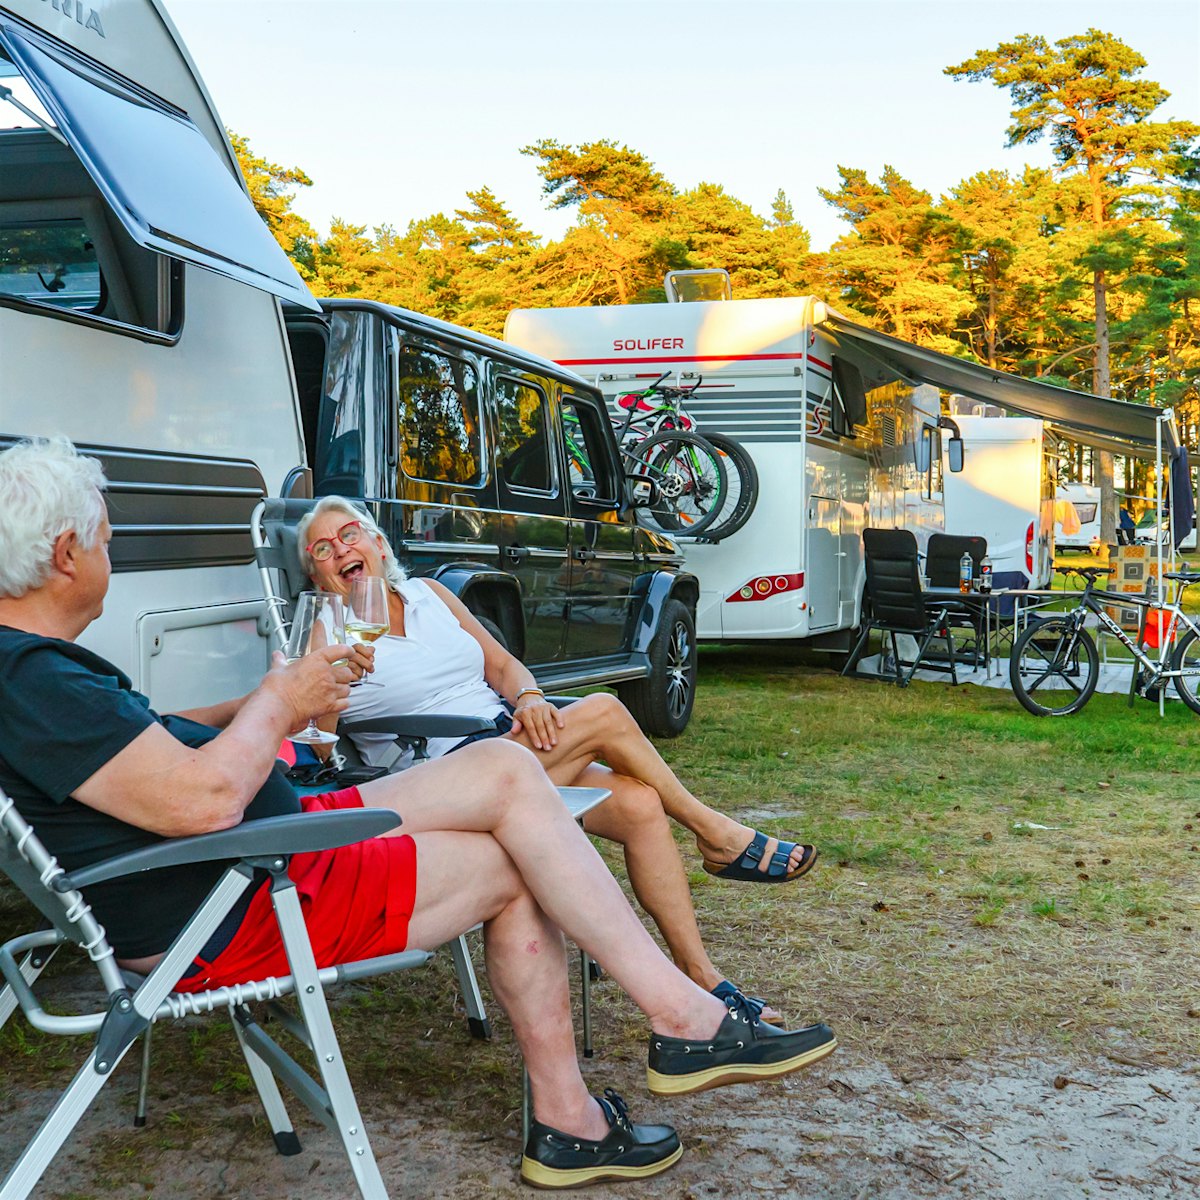 Mann og kvinne sitter foran en campingvogn, de ler og skåler to glass. I bakgrunnen er det flere campingvogner og trær.